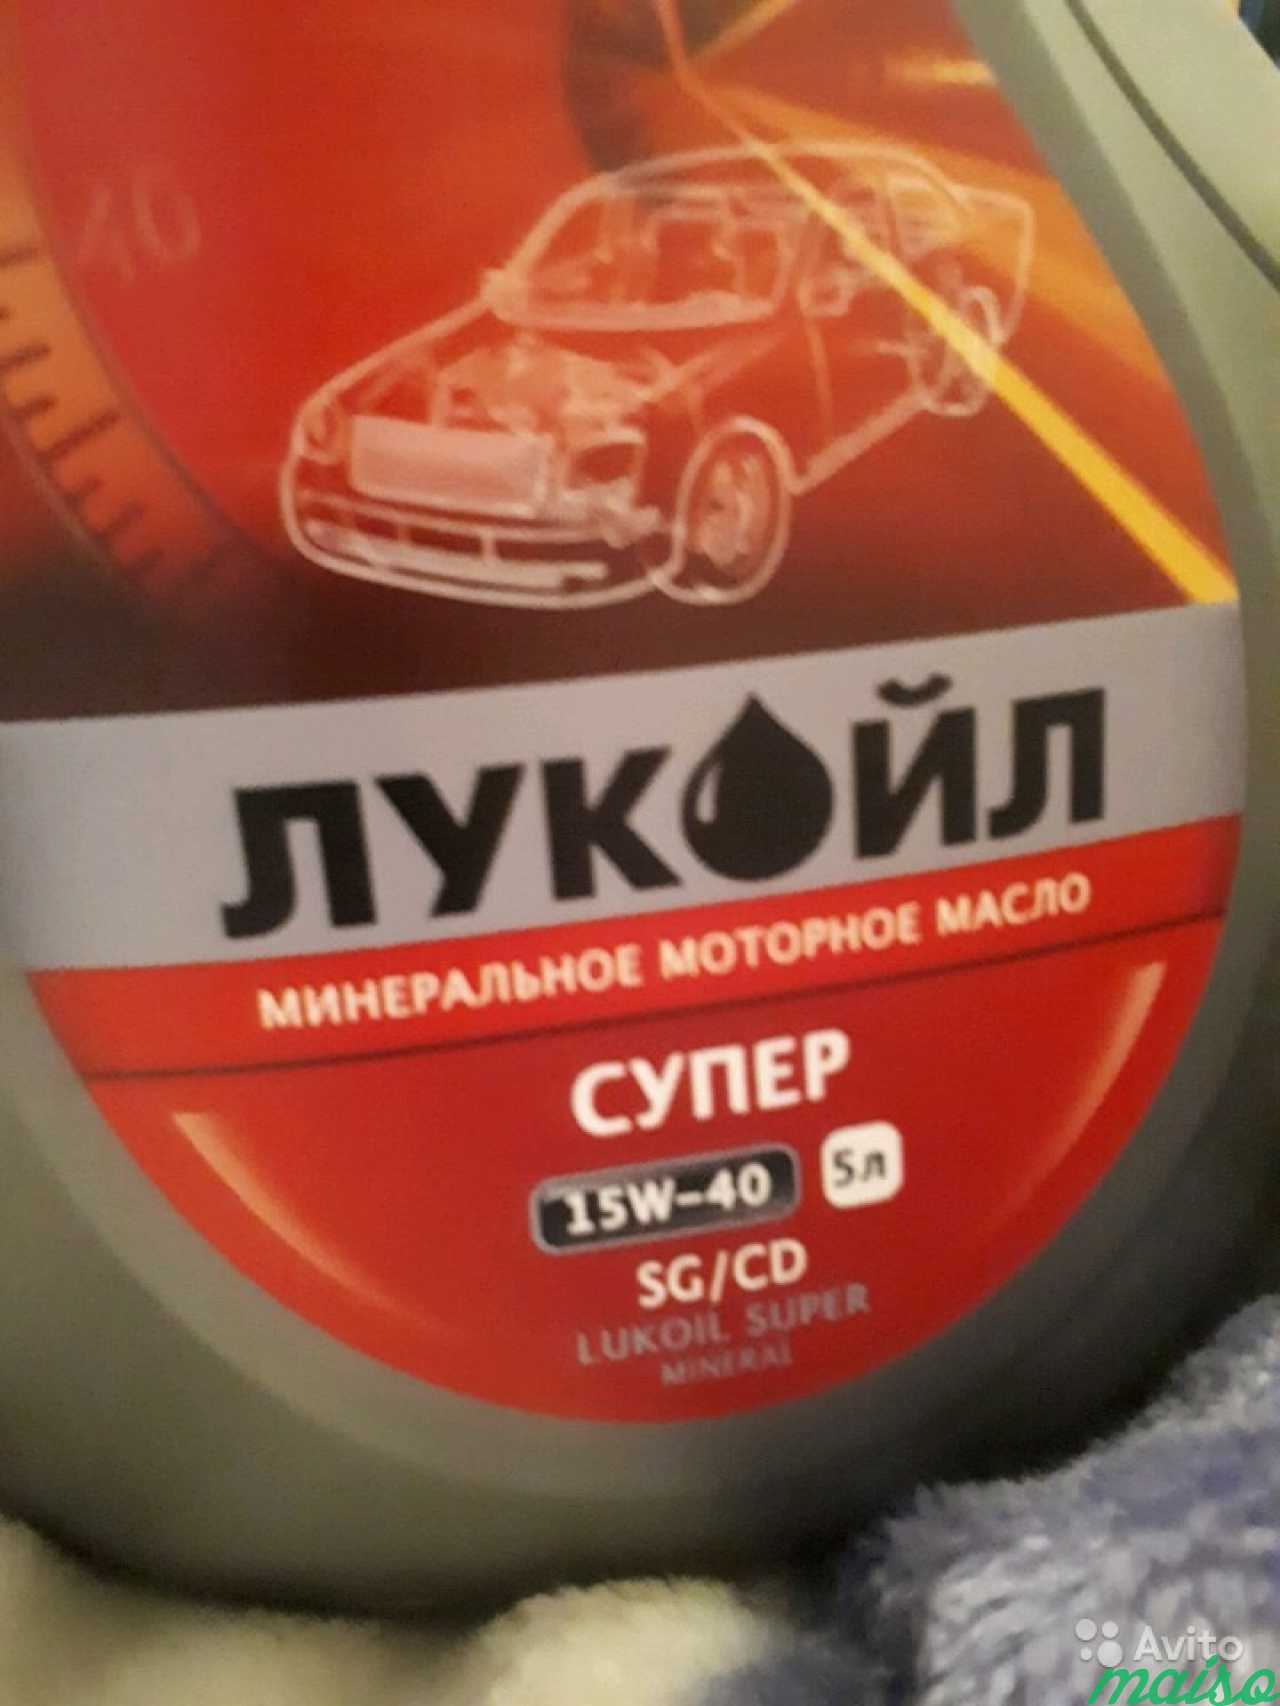 Минеральное моторное масло 15W-40 SG/CD в Санкт-Петербурге. Фото 3